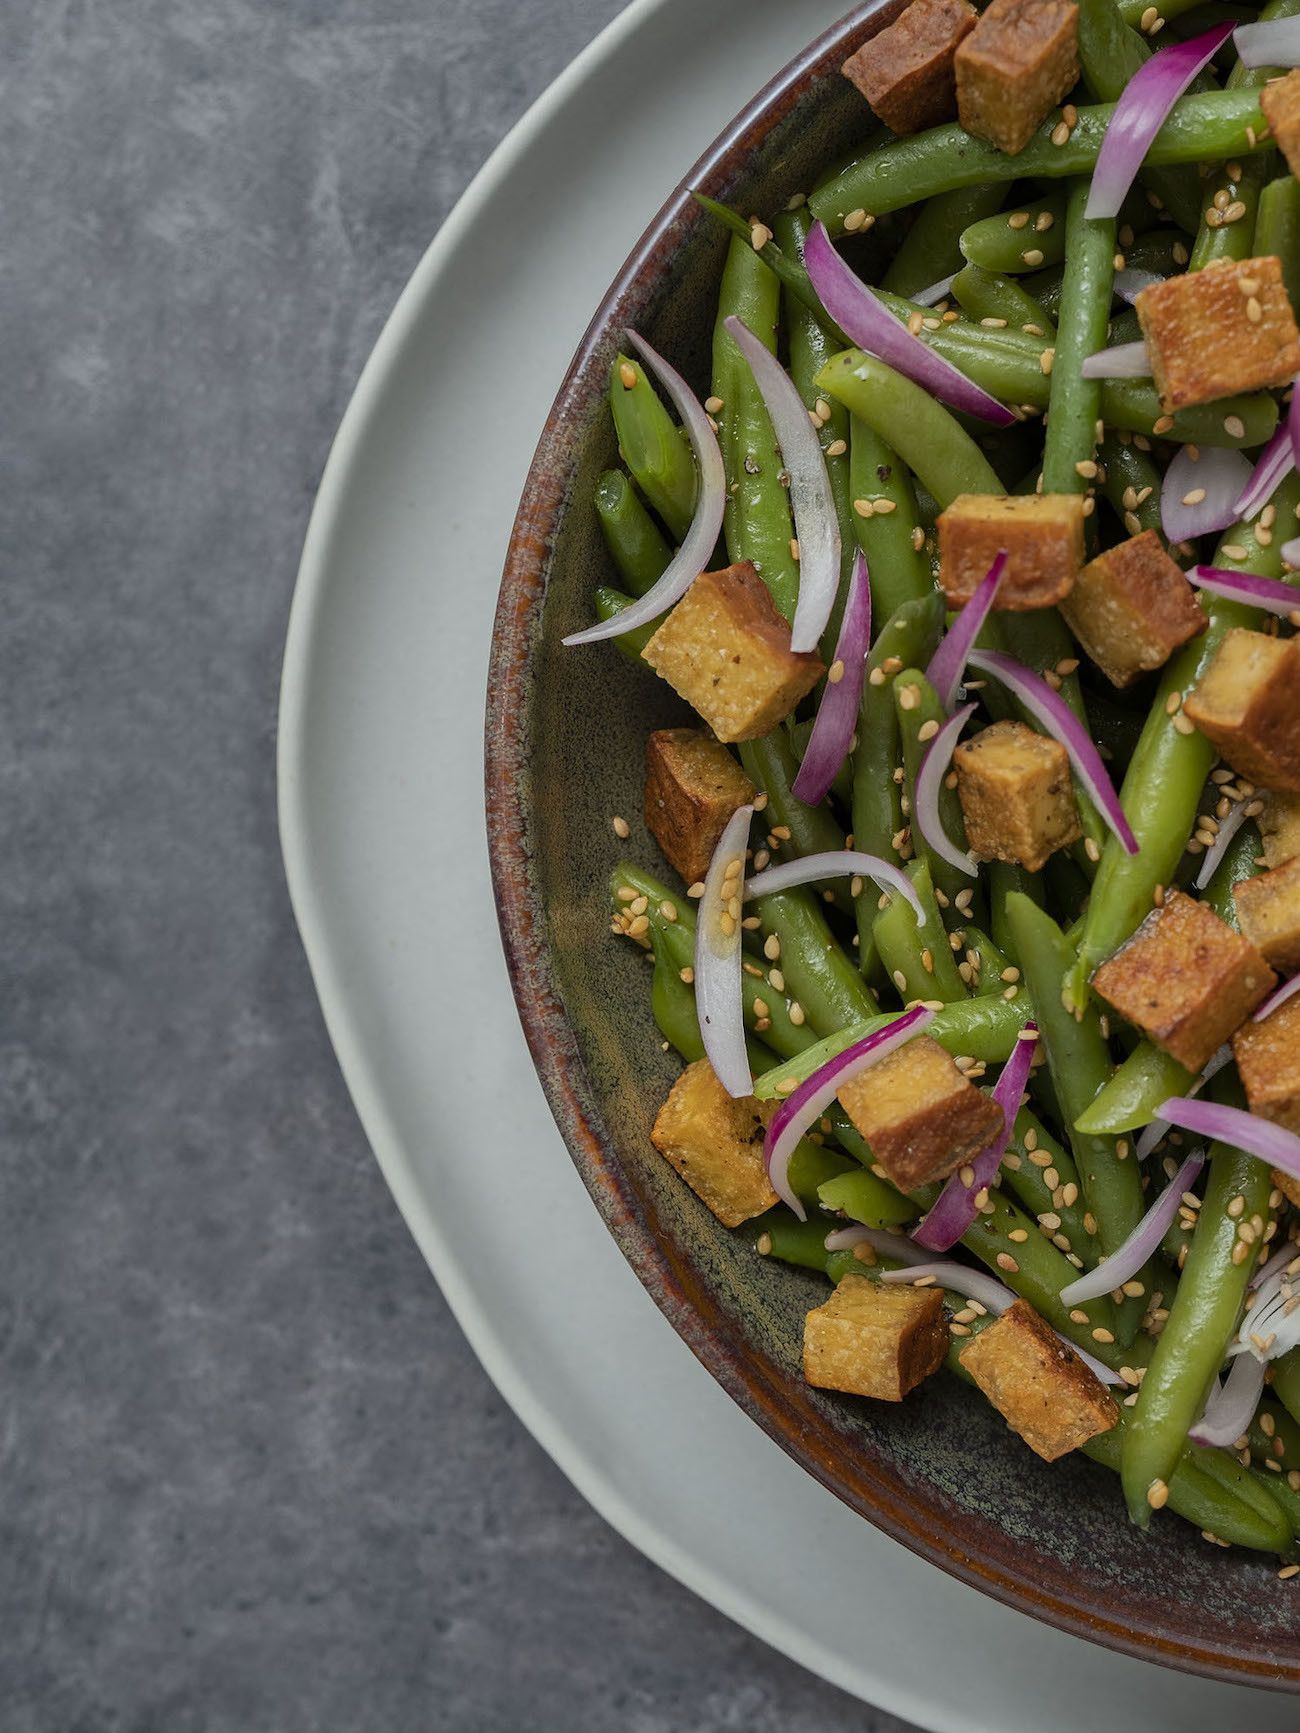 Foodblog, About Fuel, Rezept, Stangenbohnensalat mit geräuchertem Tofu, Sesam und roten Zwiebeln, Tofu, Teller, Sesam